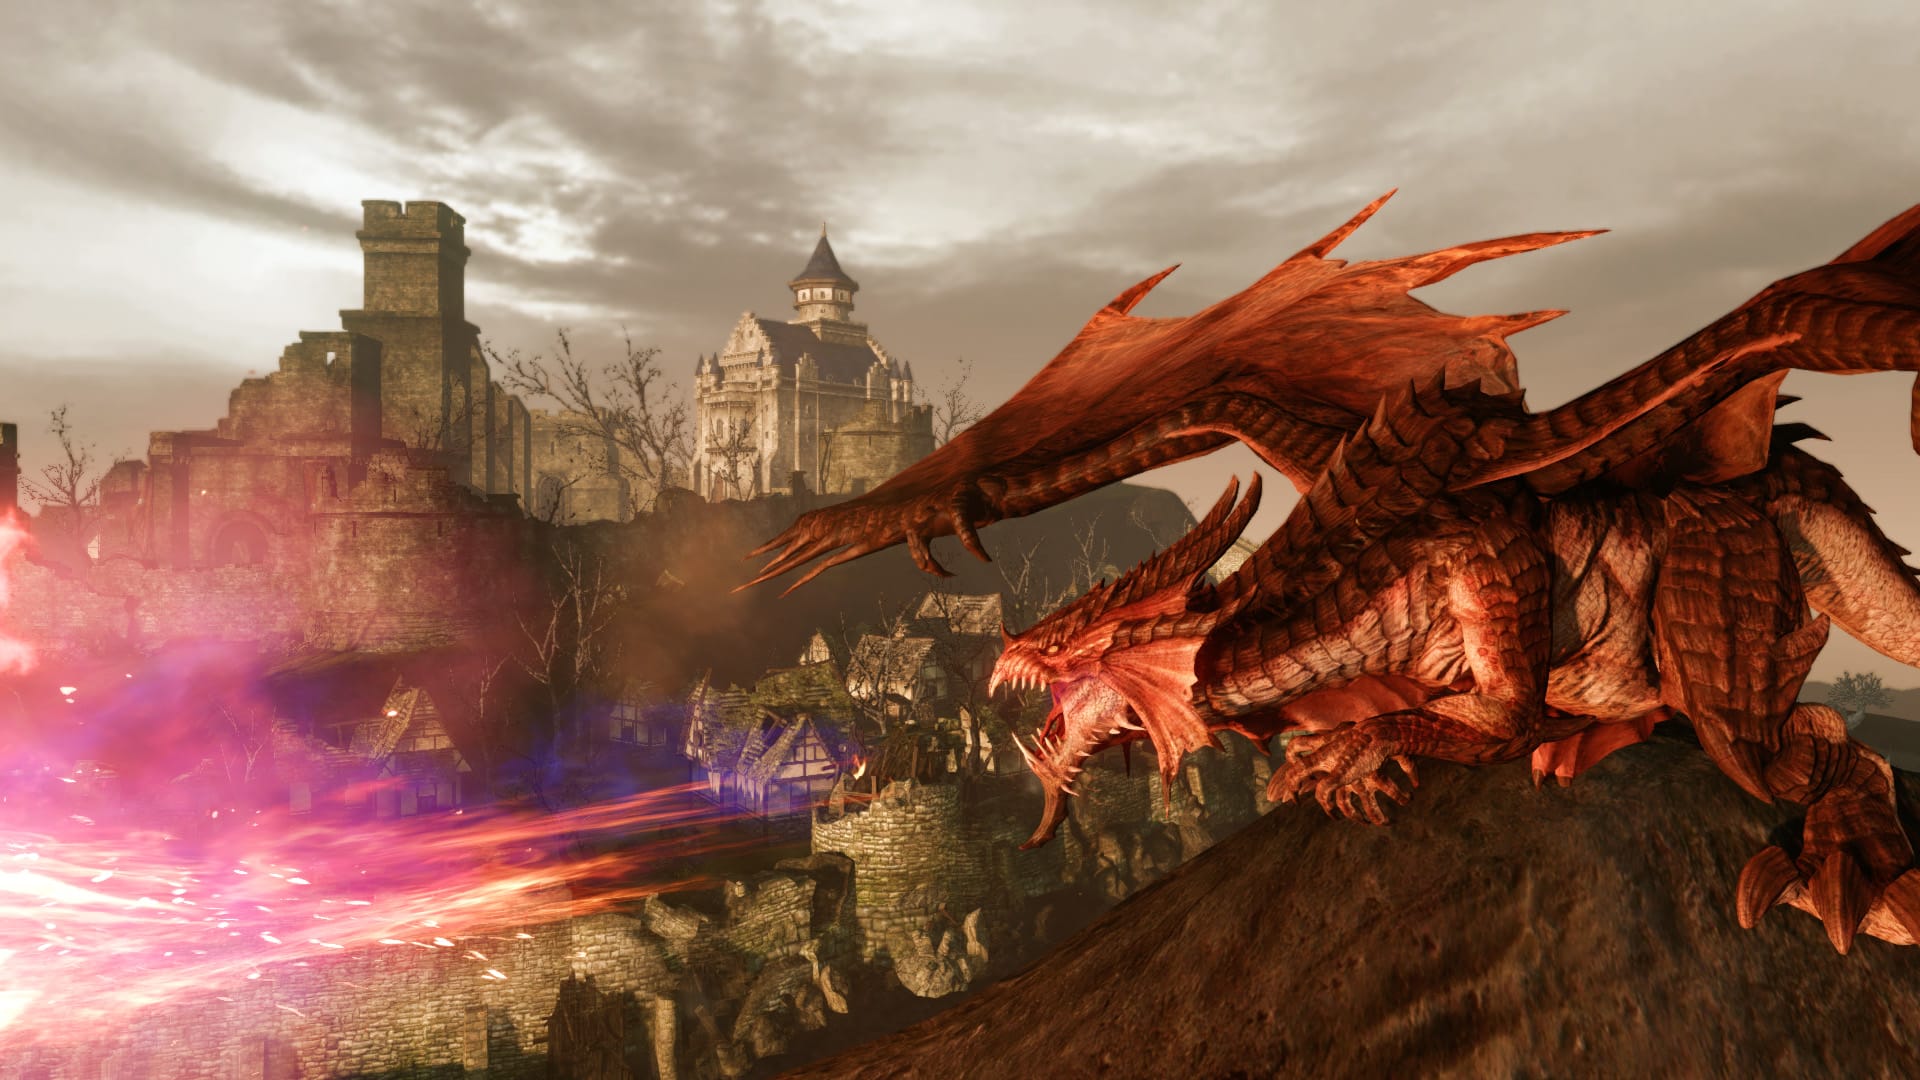 Bästa MMORPG -spel: Arcehage. Bilden visar en drake nära en stad